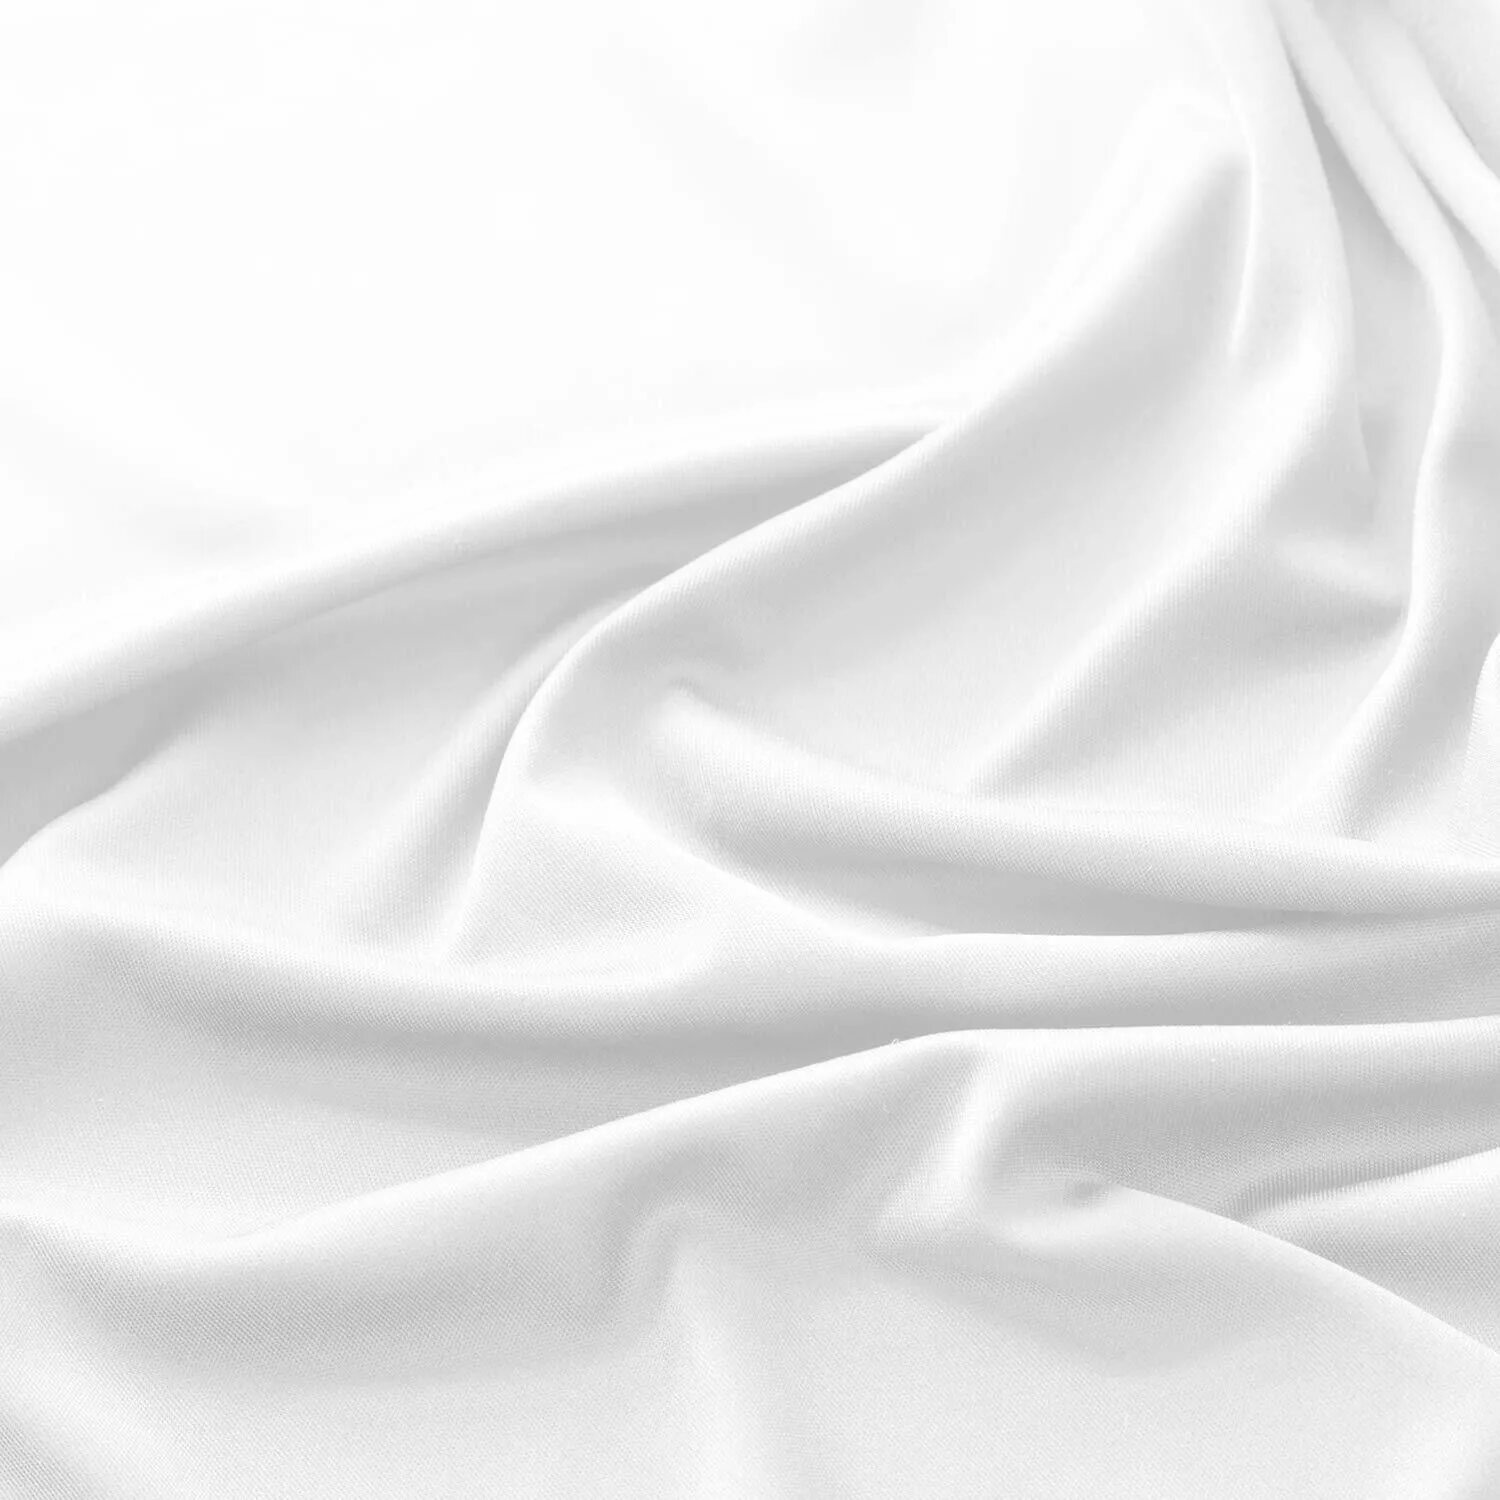 Ткань снизу. Белая ткань. Белая ткань фон. Белый атлас. Белая ткань складки.